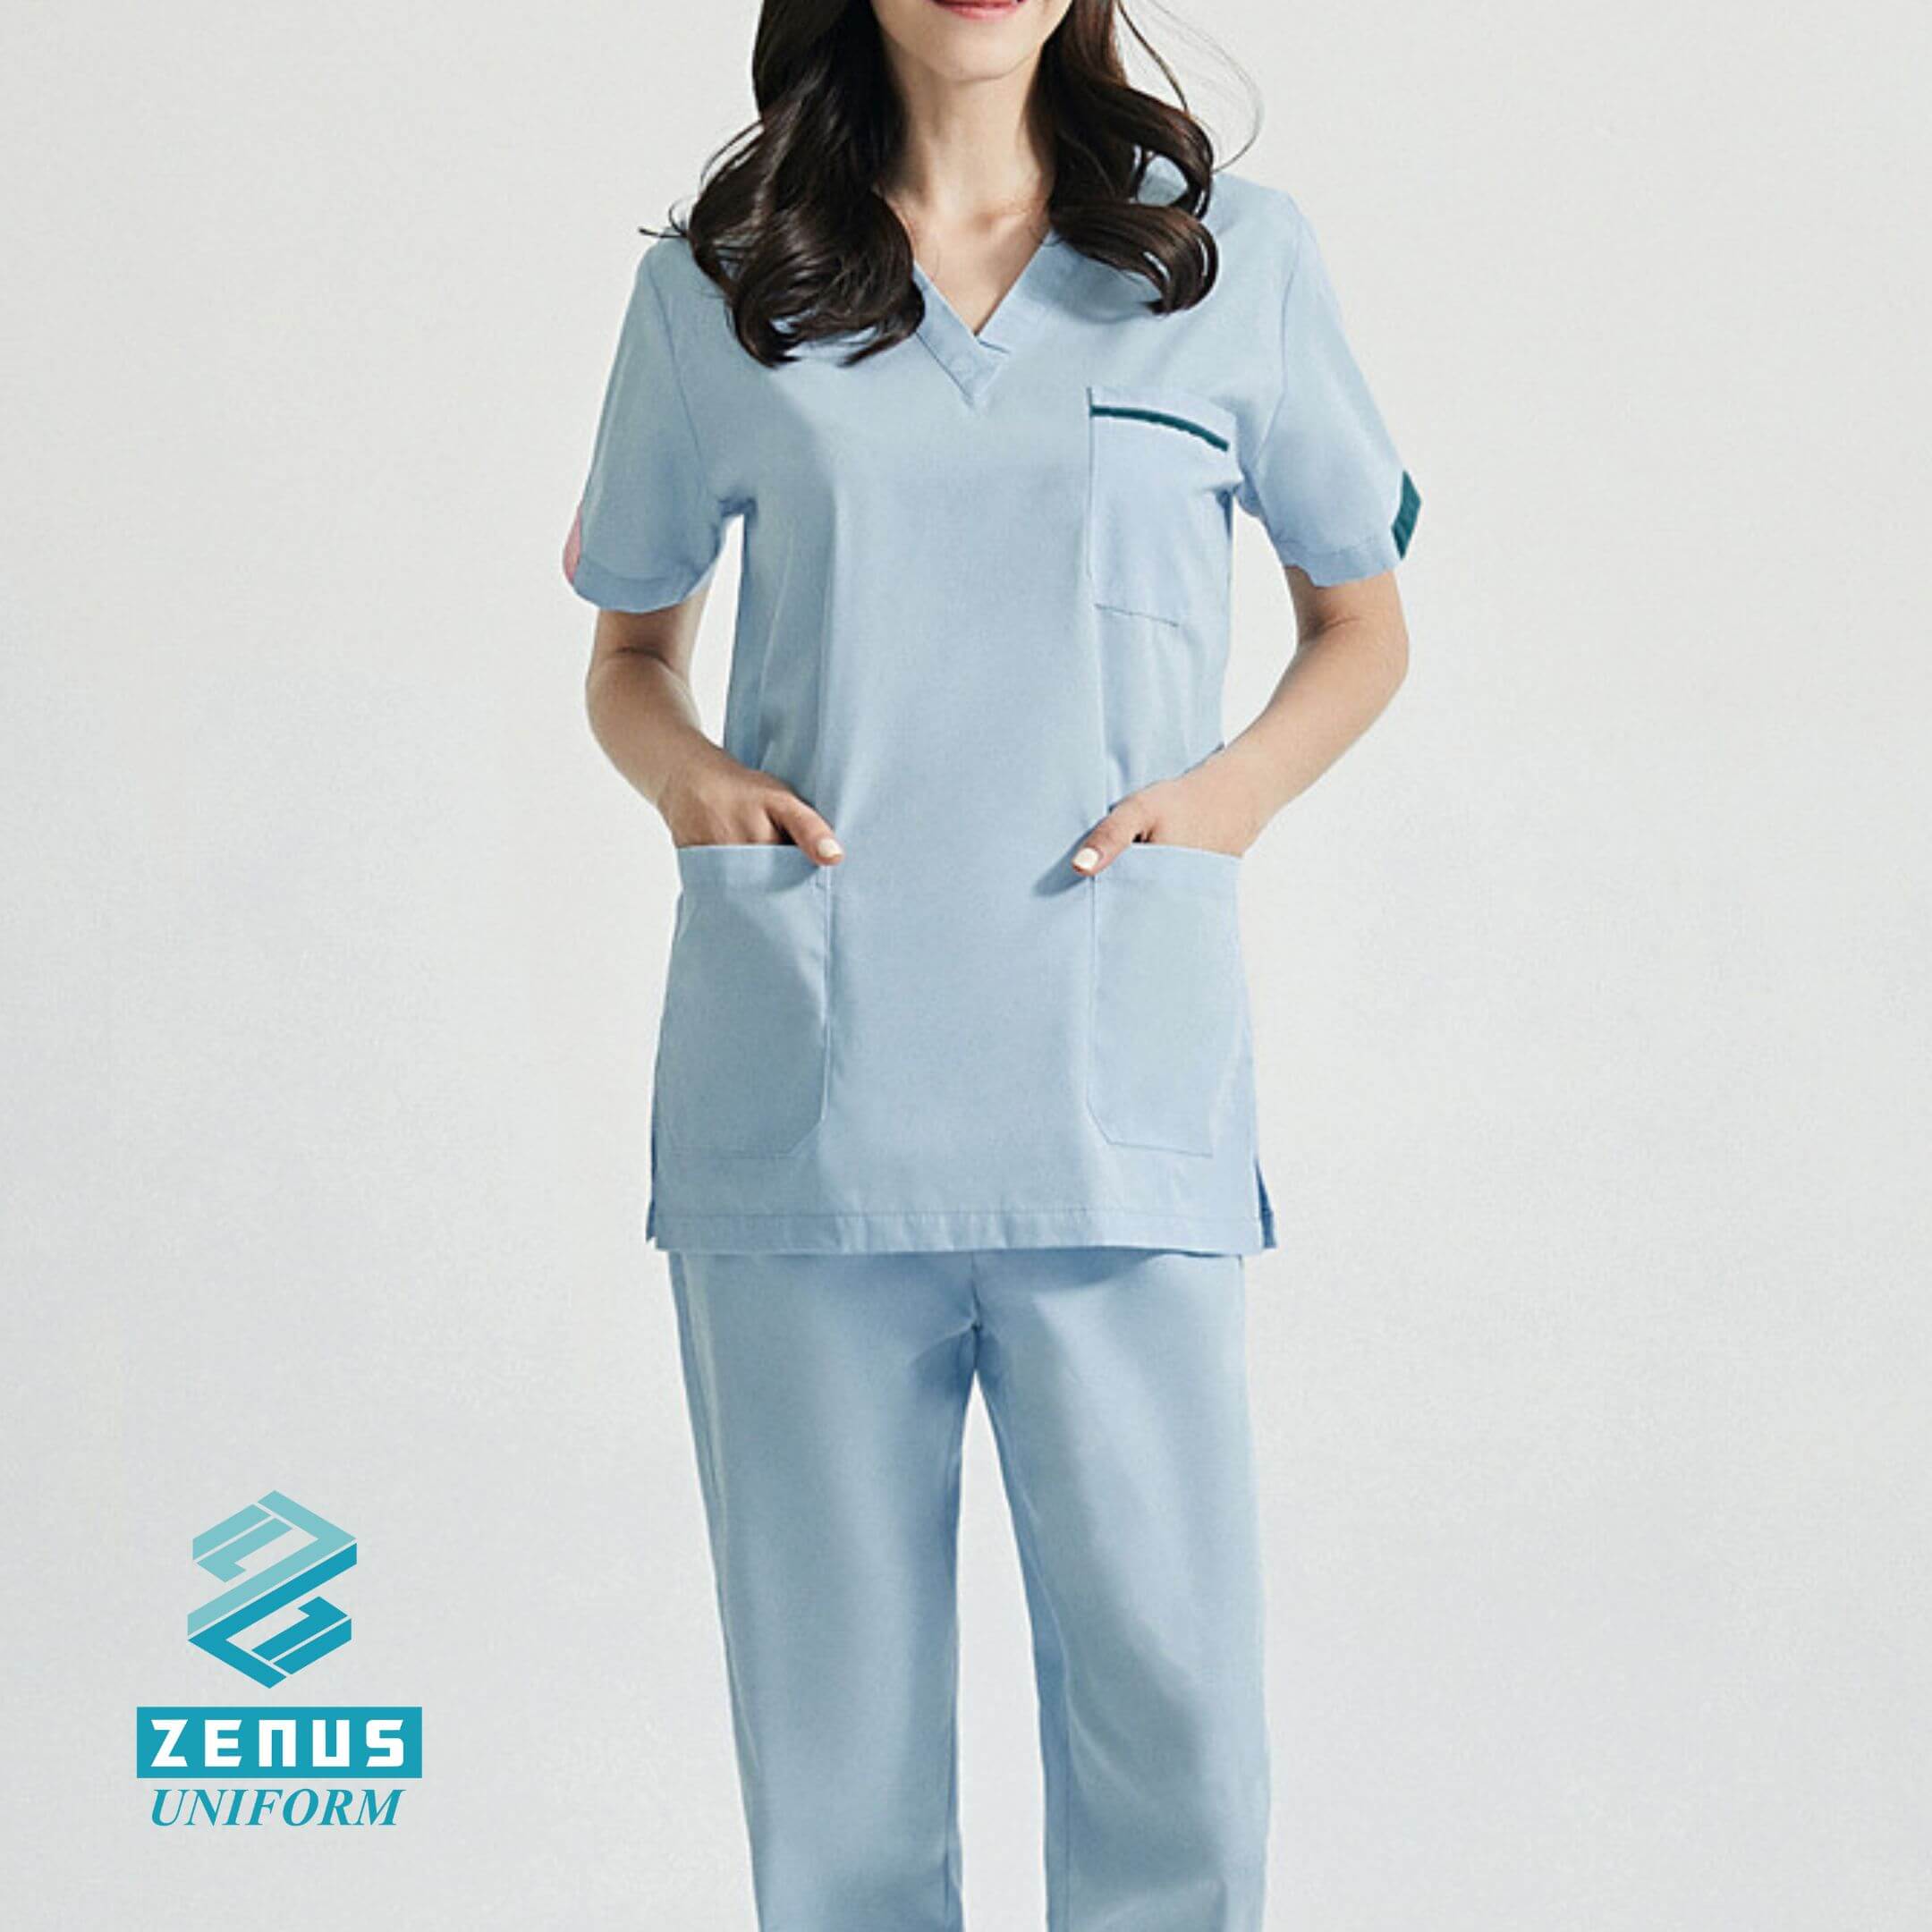 香港護士服, 護士服香港, 香港護士製服 -pic05